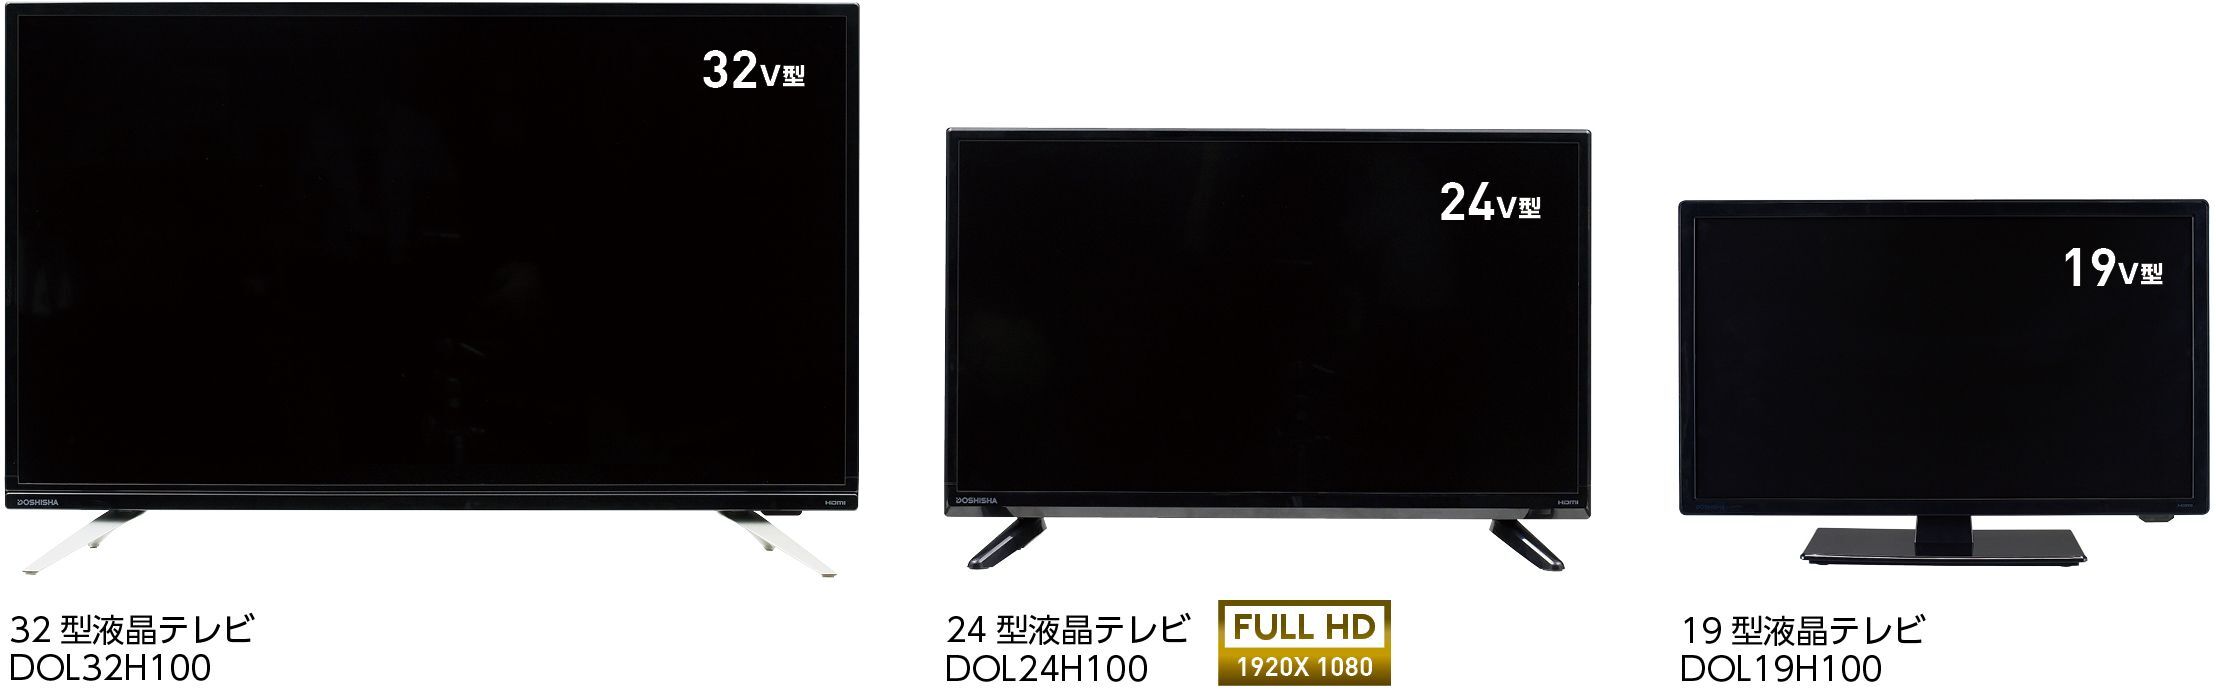 ドウシシャ32型ハイビジョンLED液晶テレビ - テレビ